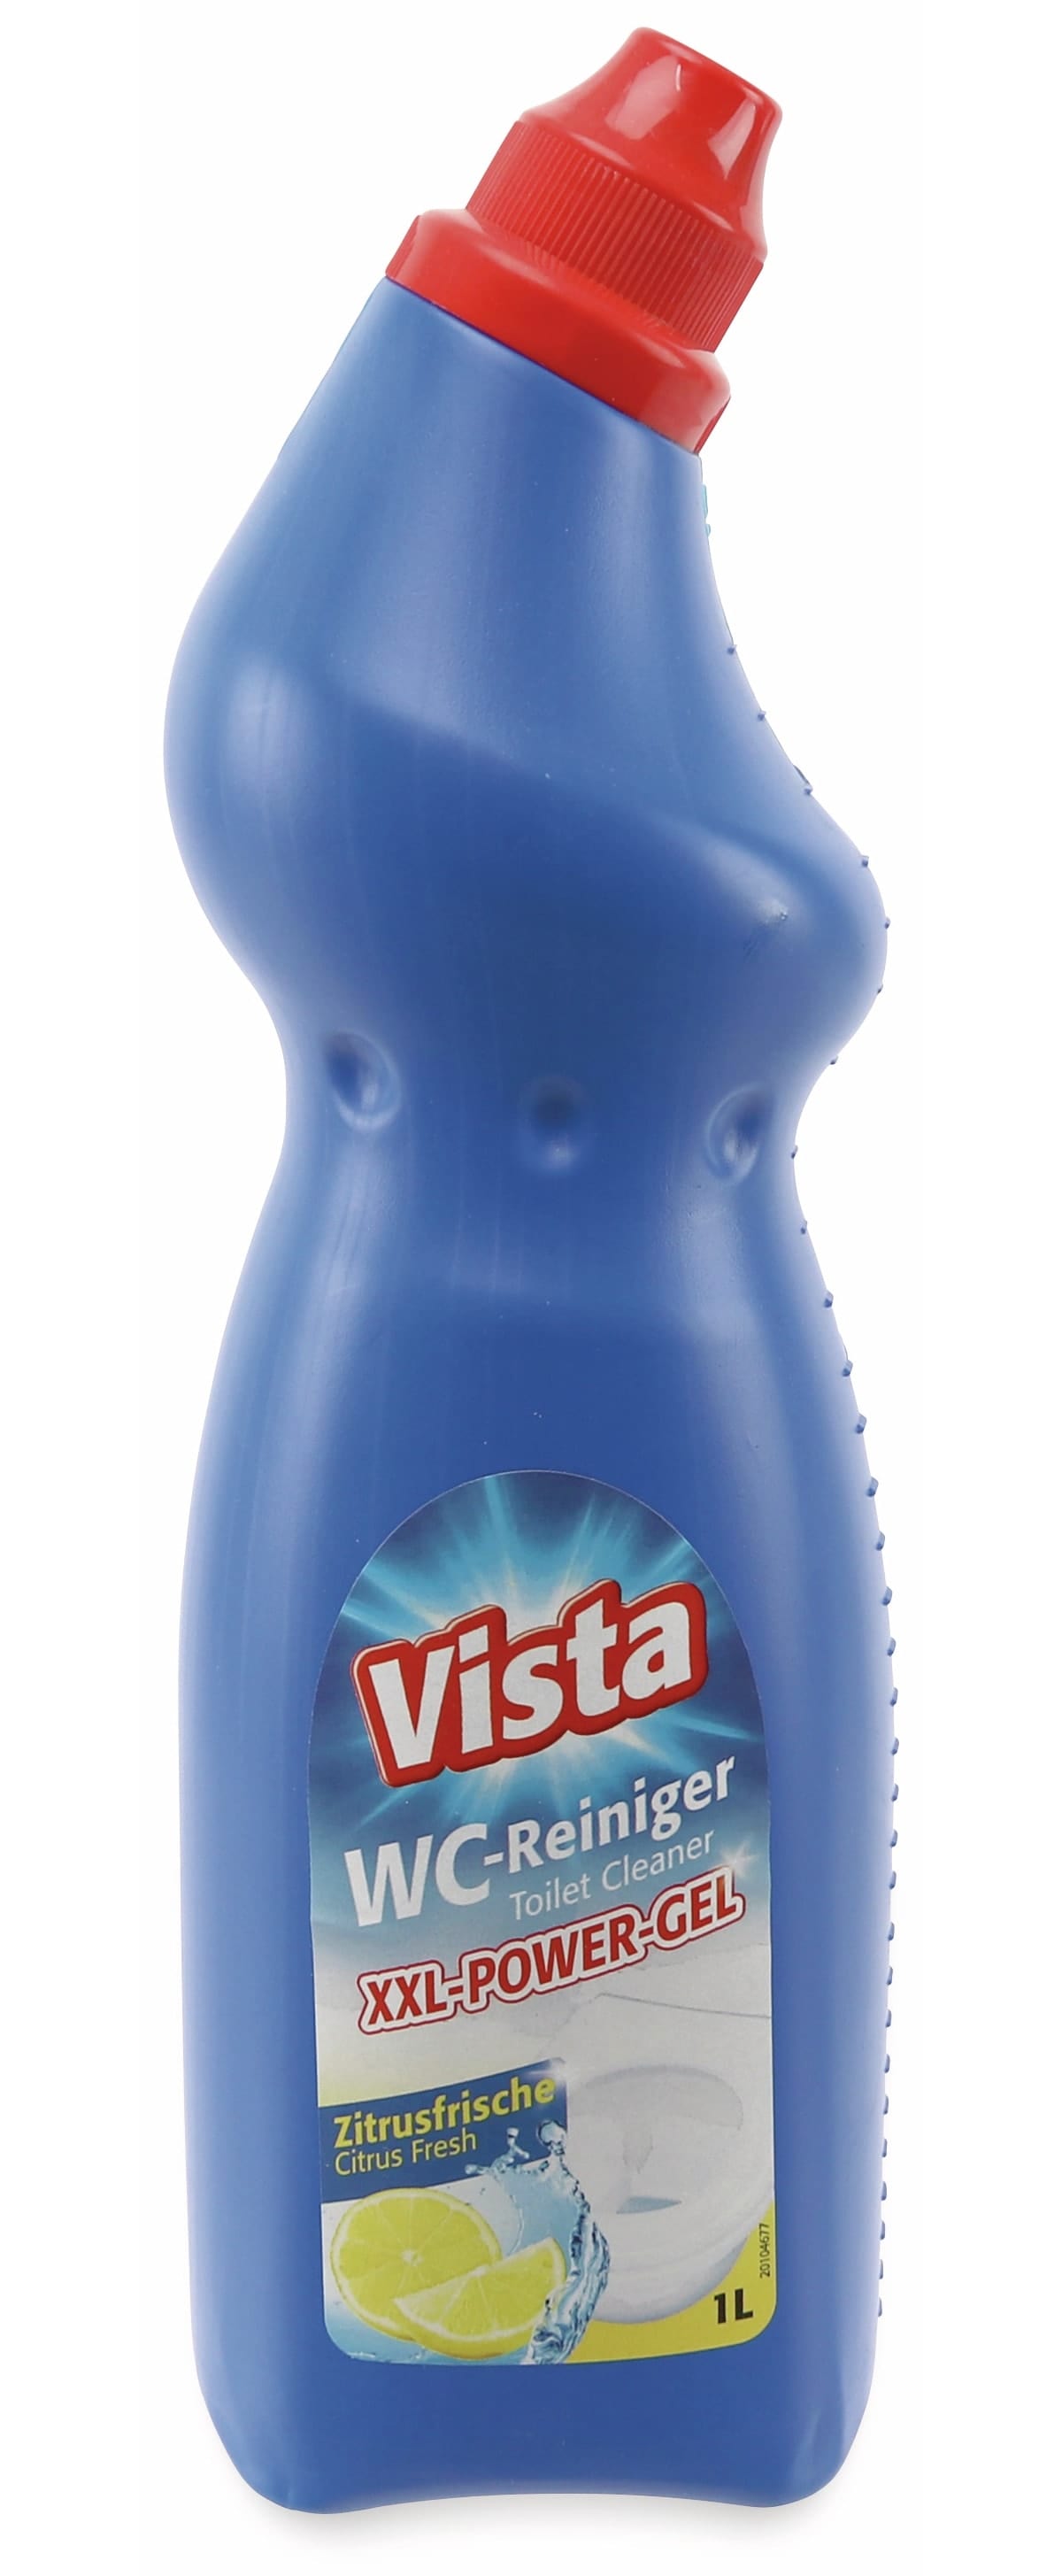 Vista WC-Reiniger XXL-Power-Gel, 1000 ml